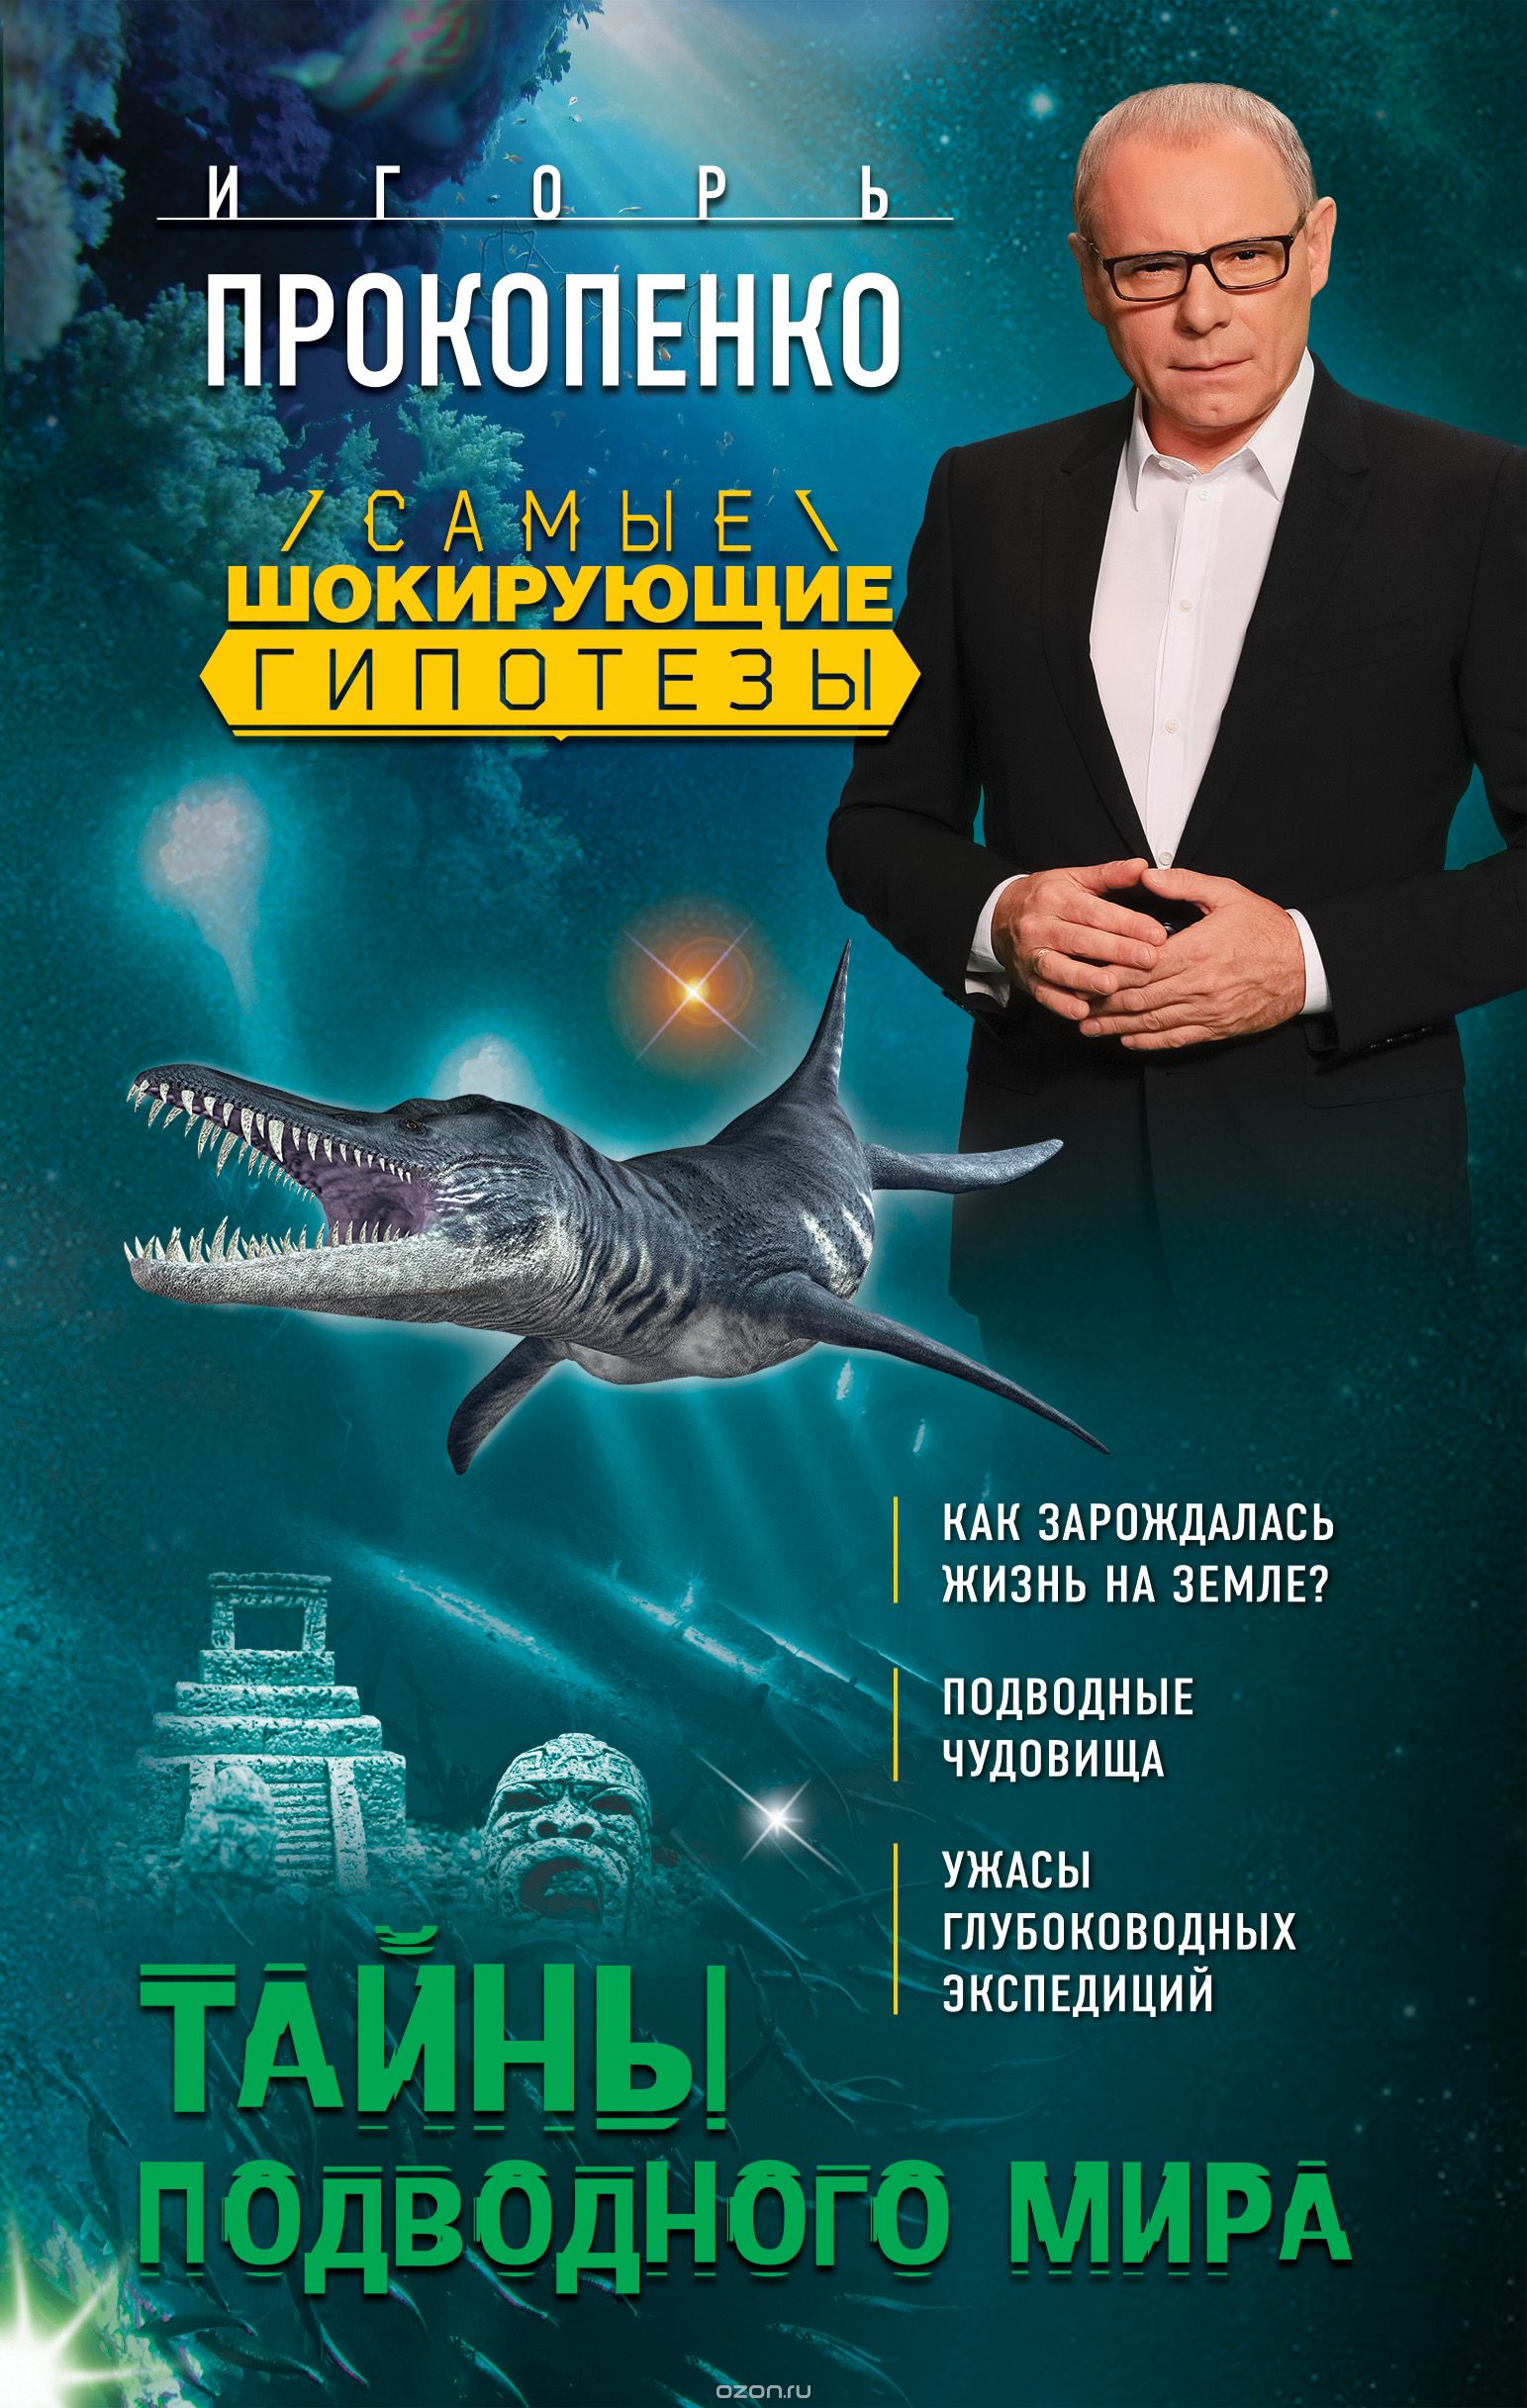 Тайны подводного мира, Игорь Прокопенко